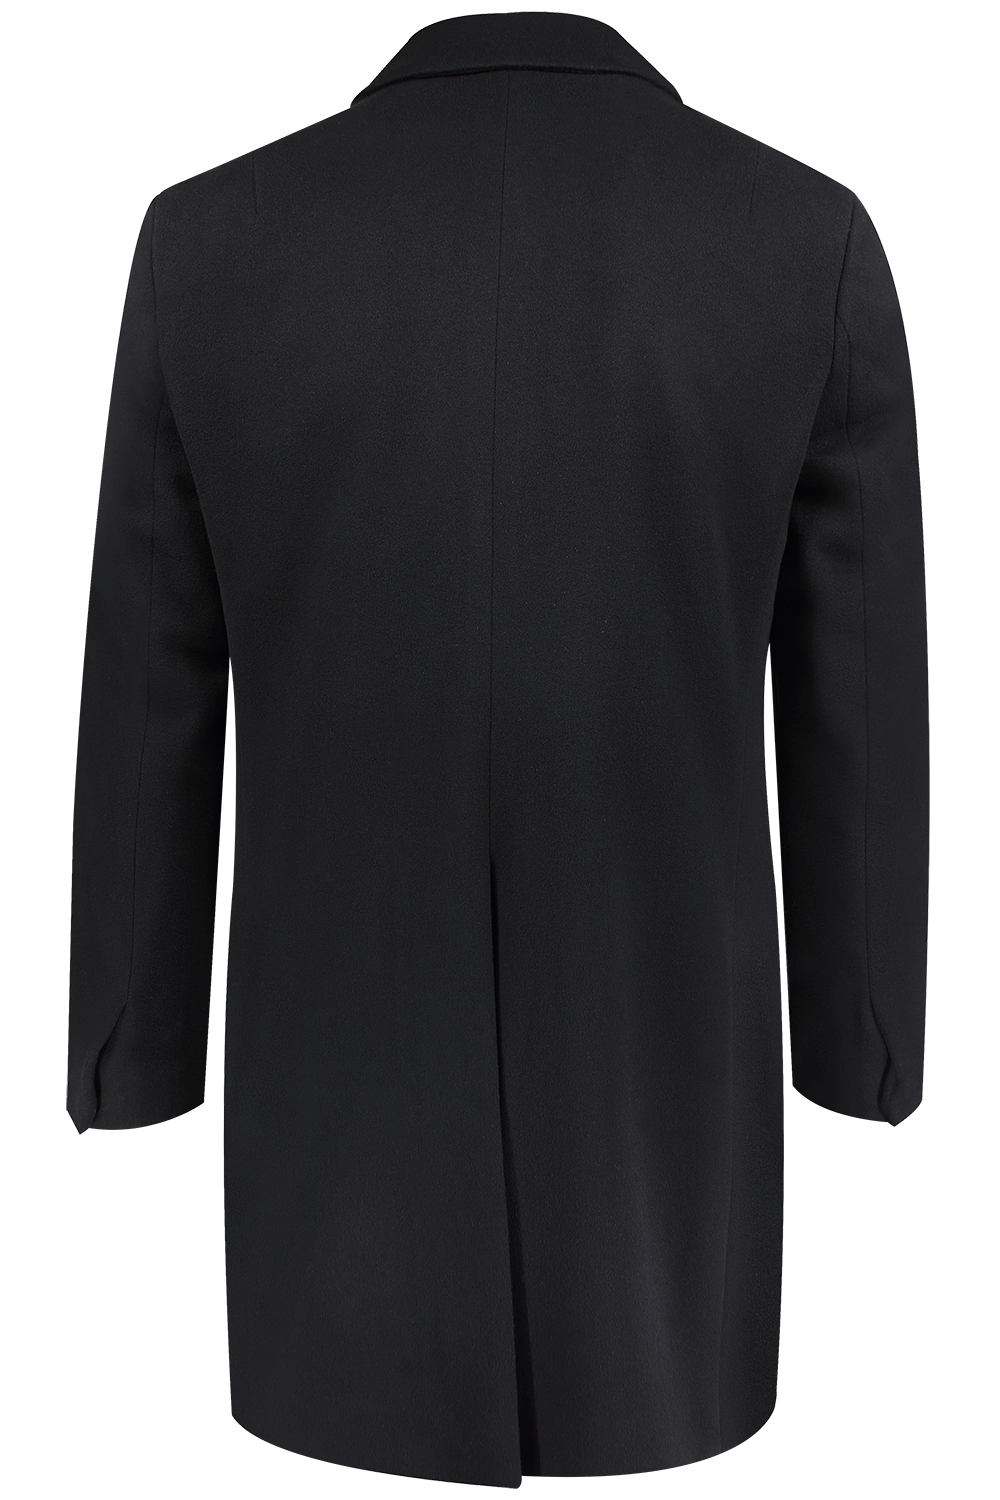 Cappotto doppiopetto in pura lana nera retro